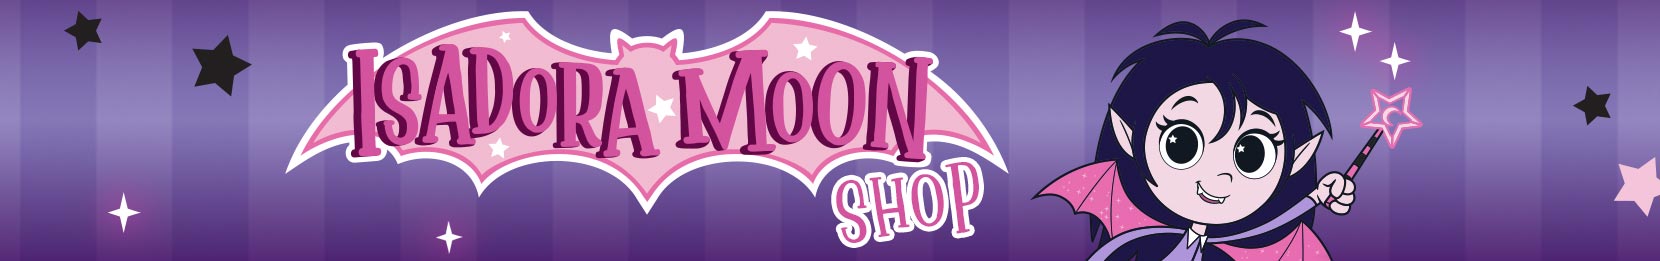 Isadora Moon Shop